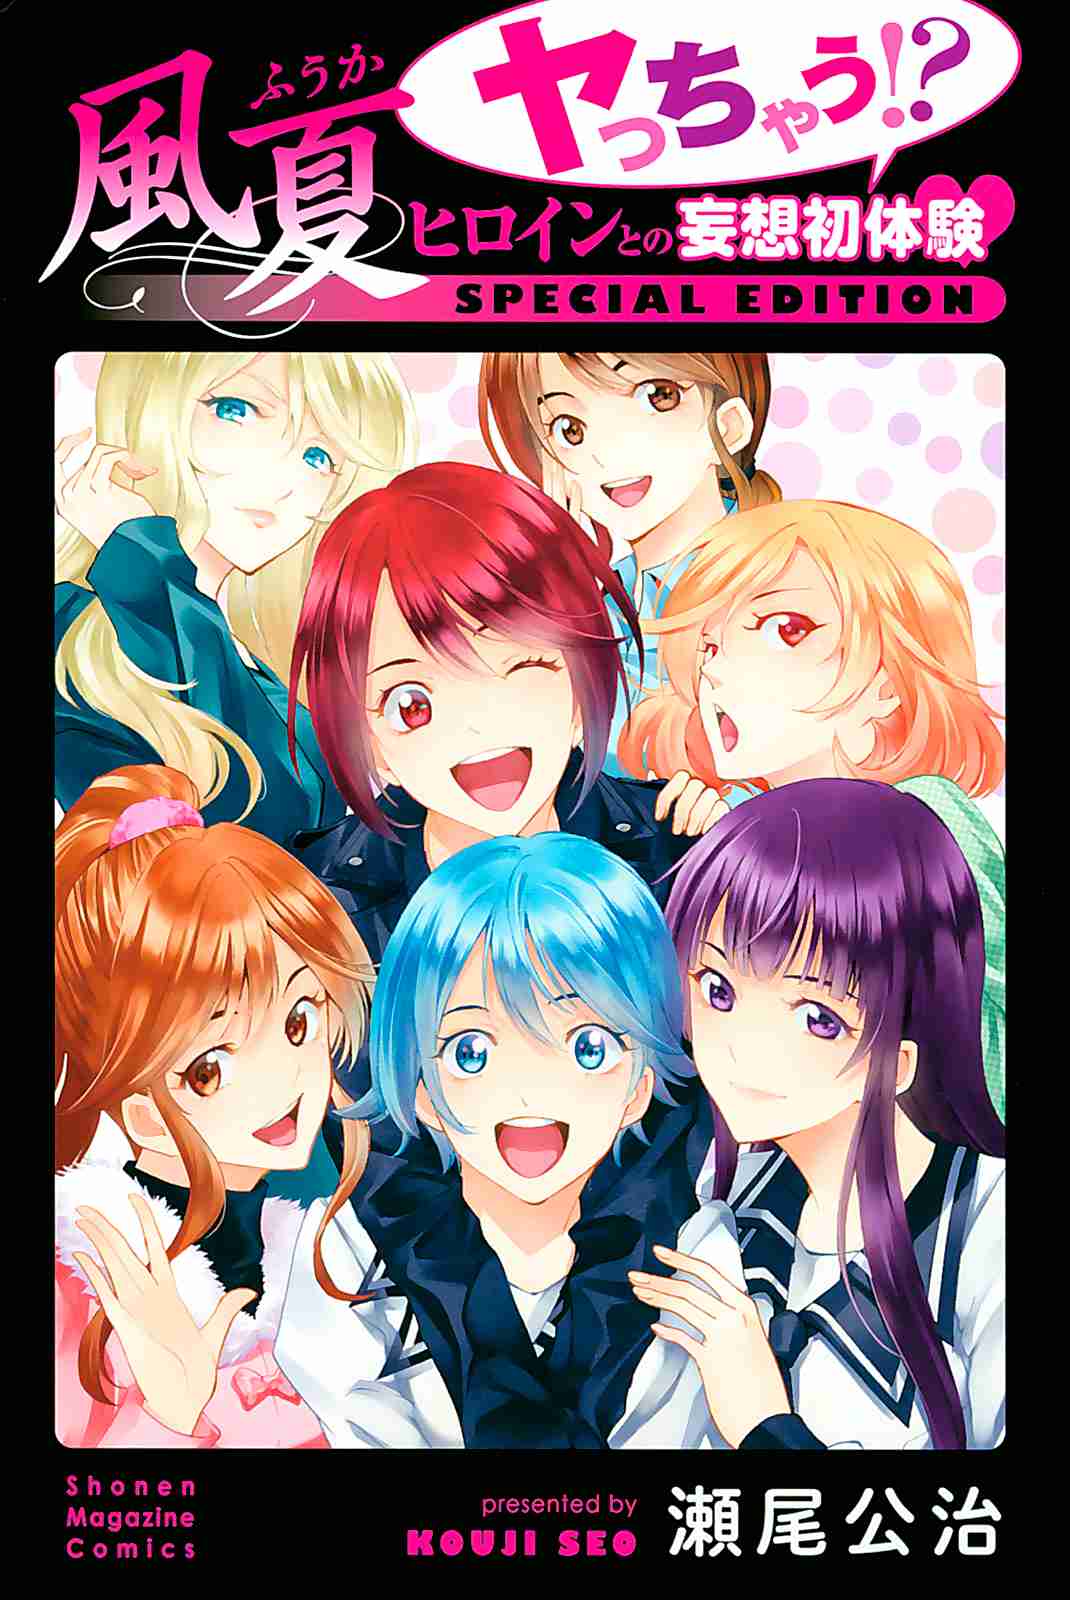 Fuuka Special Edition Vol. 1 Ch. 1 Those Sorts of Things (Akitsuki Fuuka)